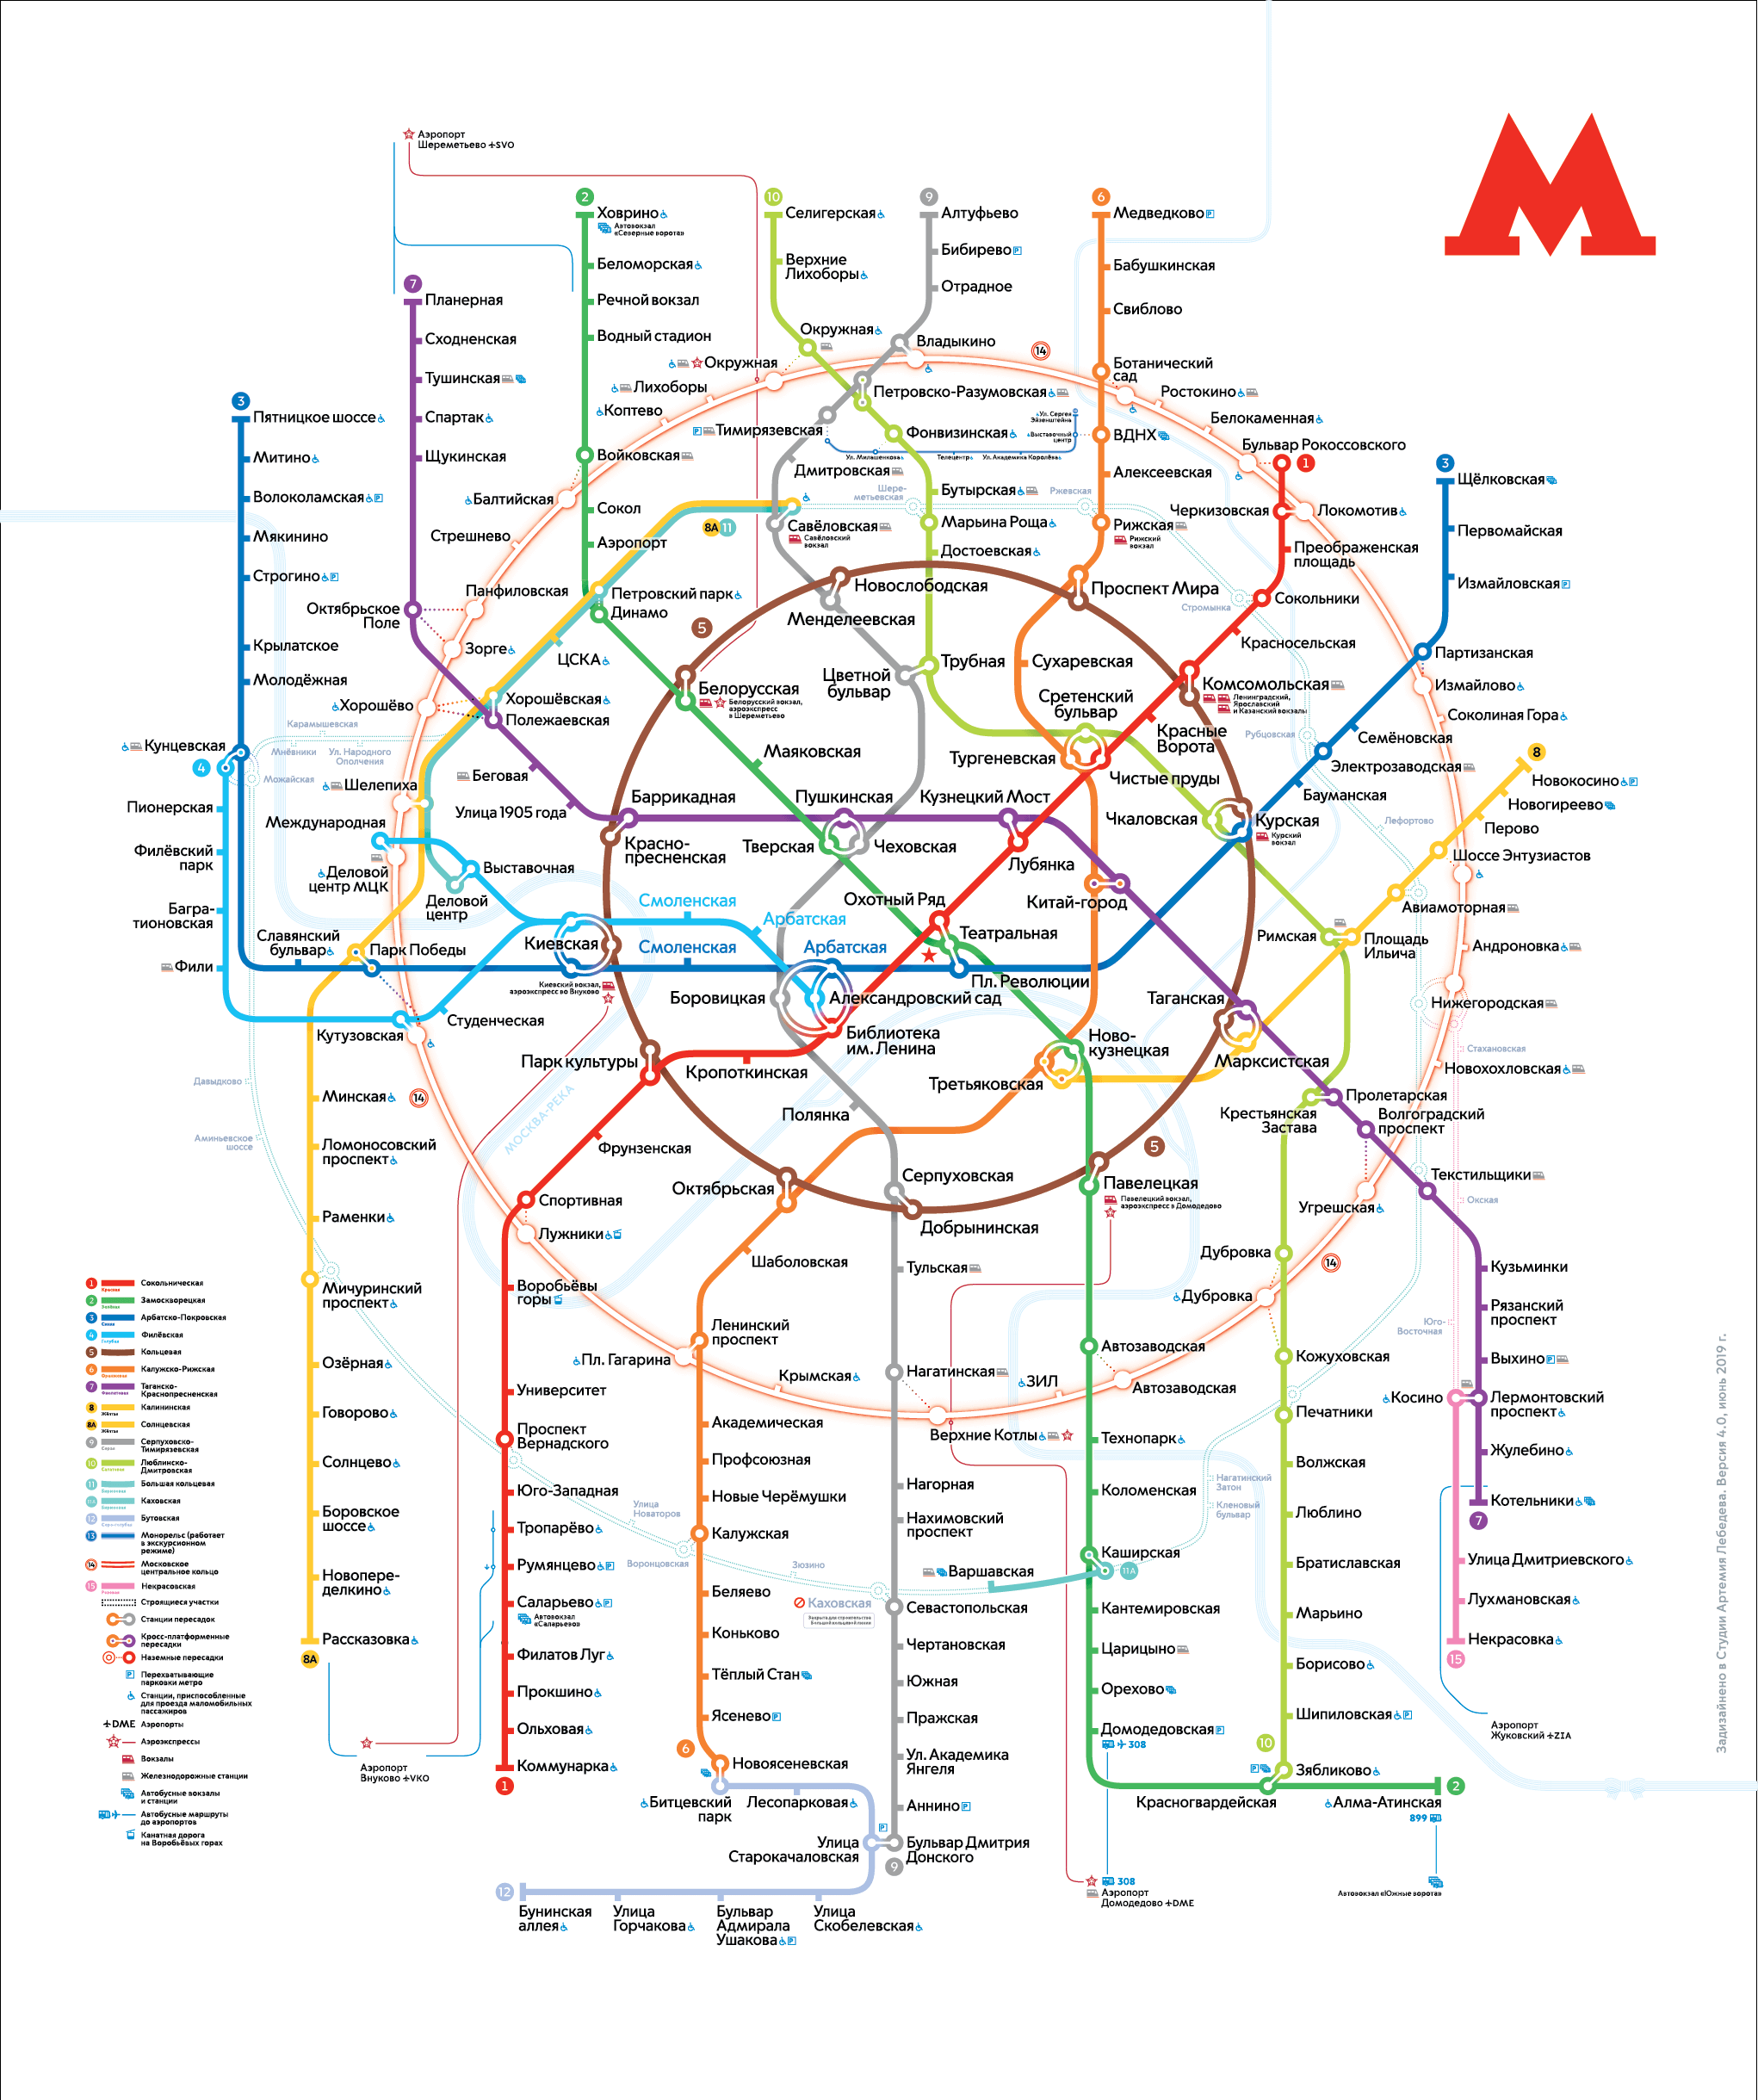 Станция вднх карта метро москвы